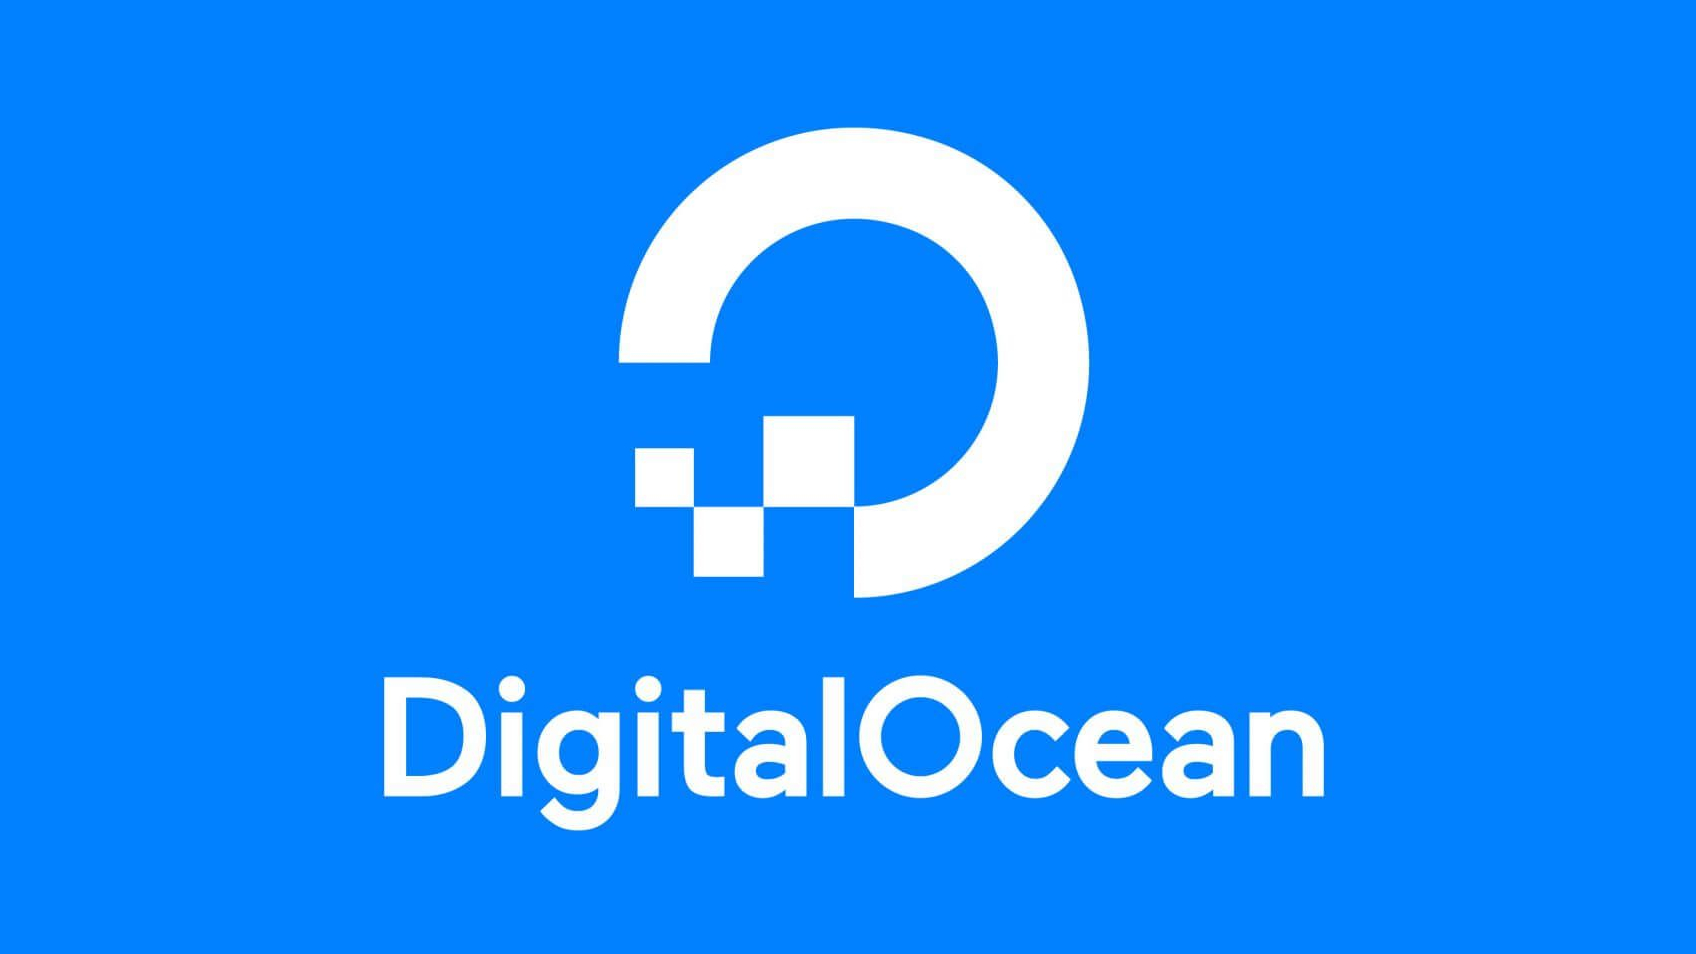 DigitalOcean расширяет предложение веб-хостинга благодаря приобретению Cloudways за 350 млн долларов